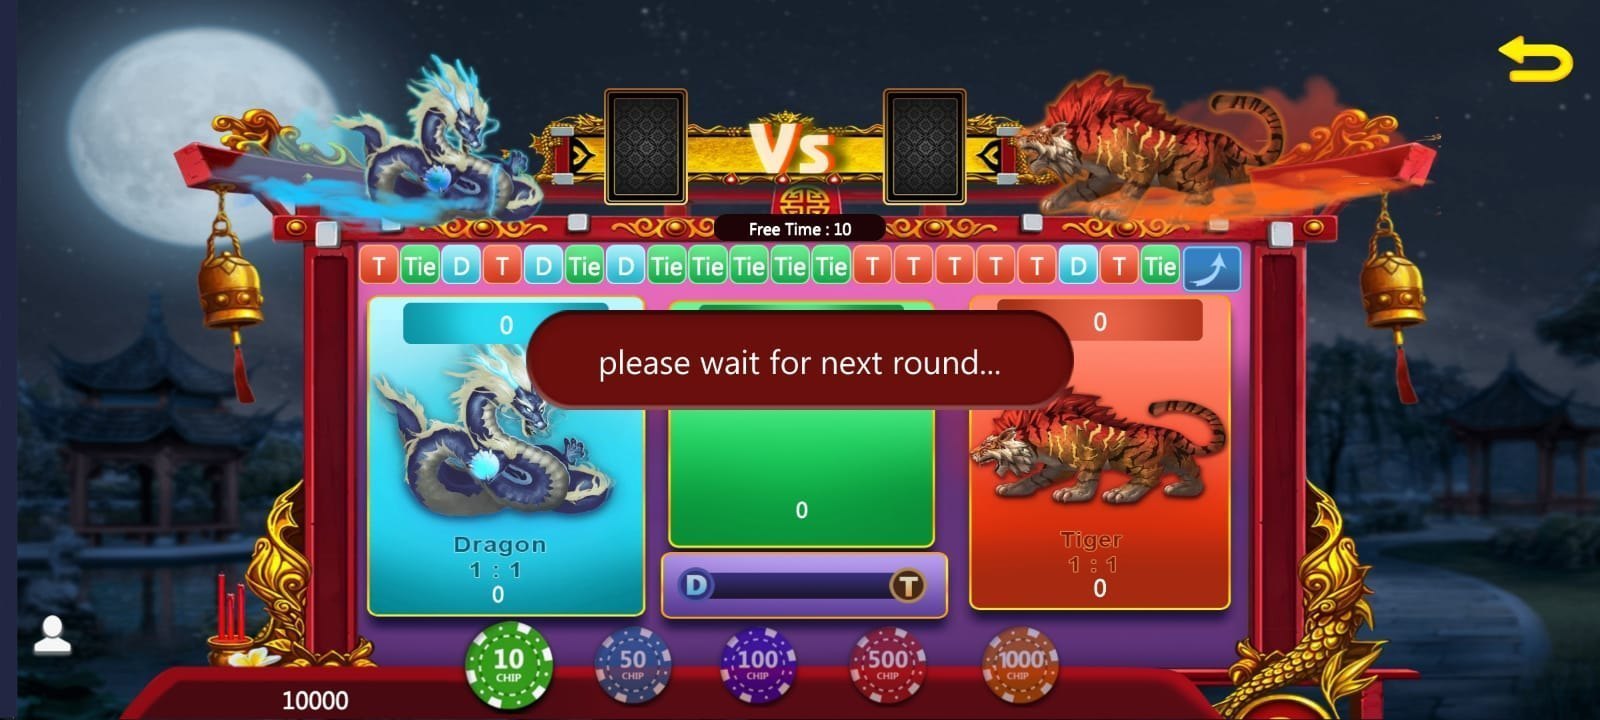 dragon gameplay